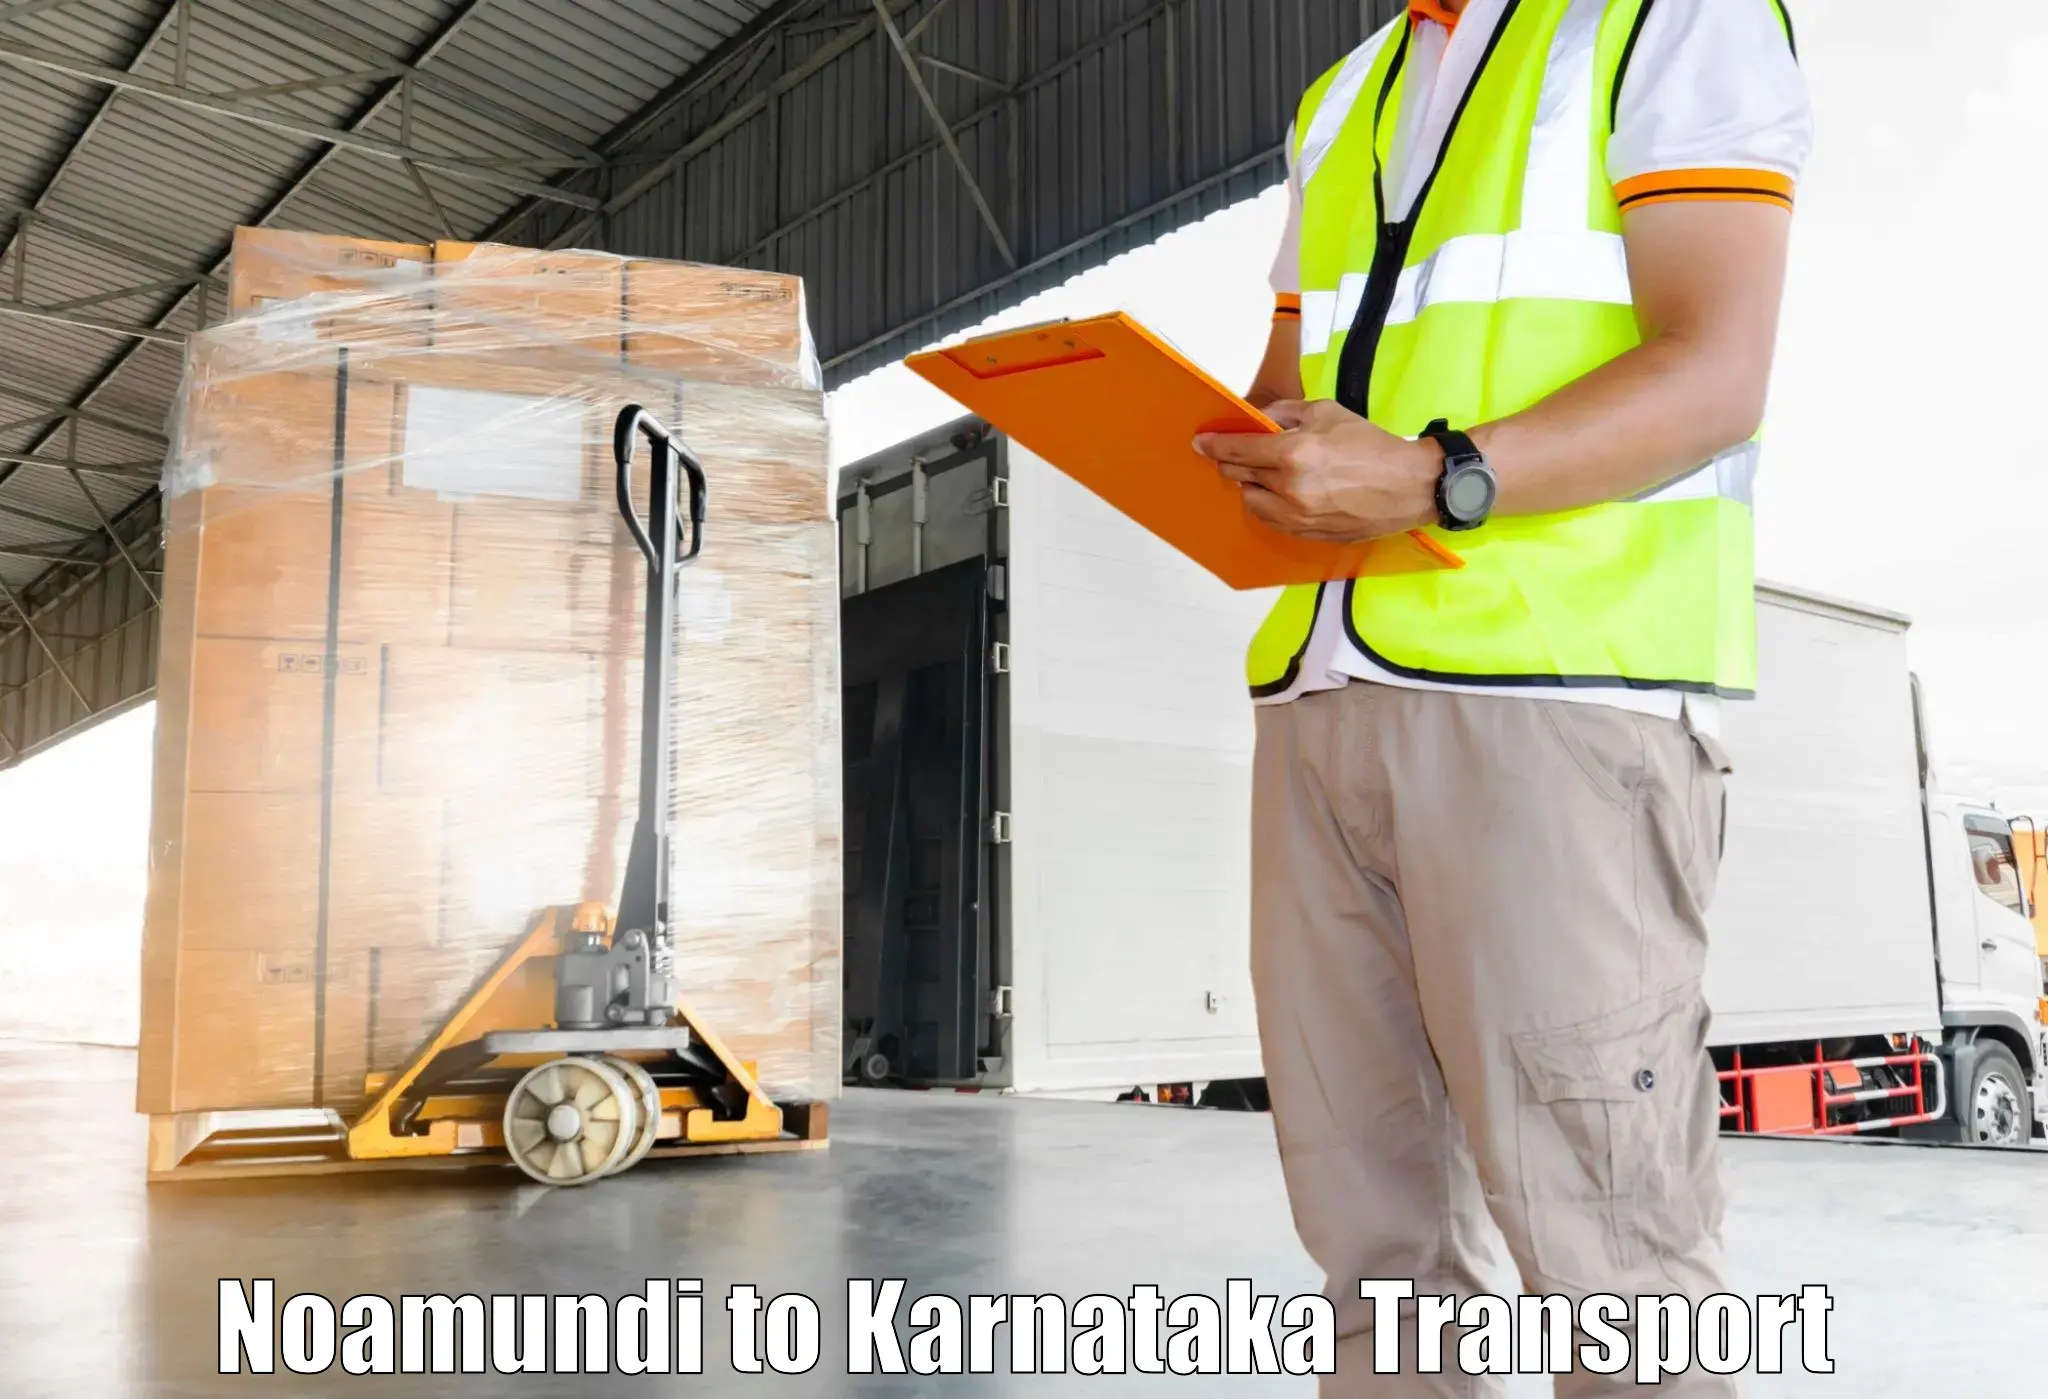 Container transport service Noamundi to Kanakapura